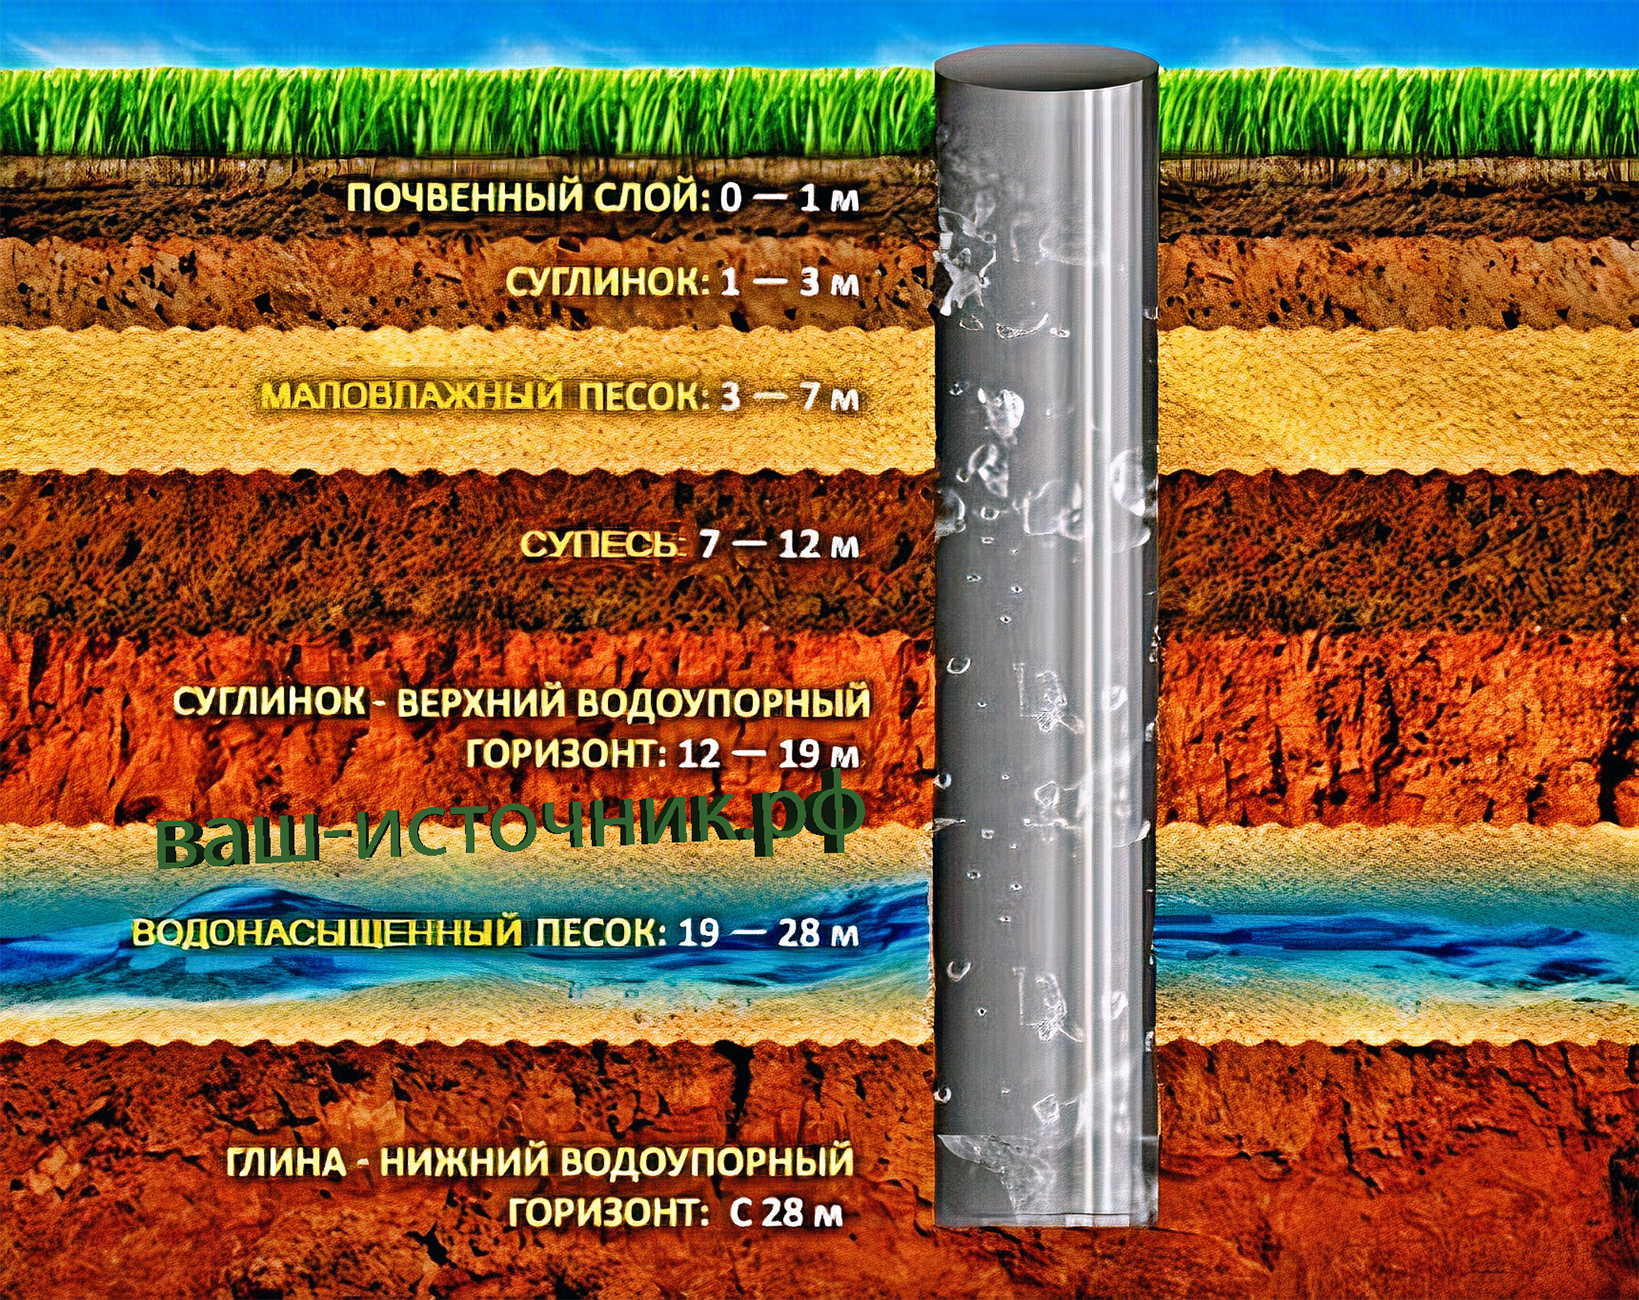 Какой будет глубина скважины для питьевой воды?